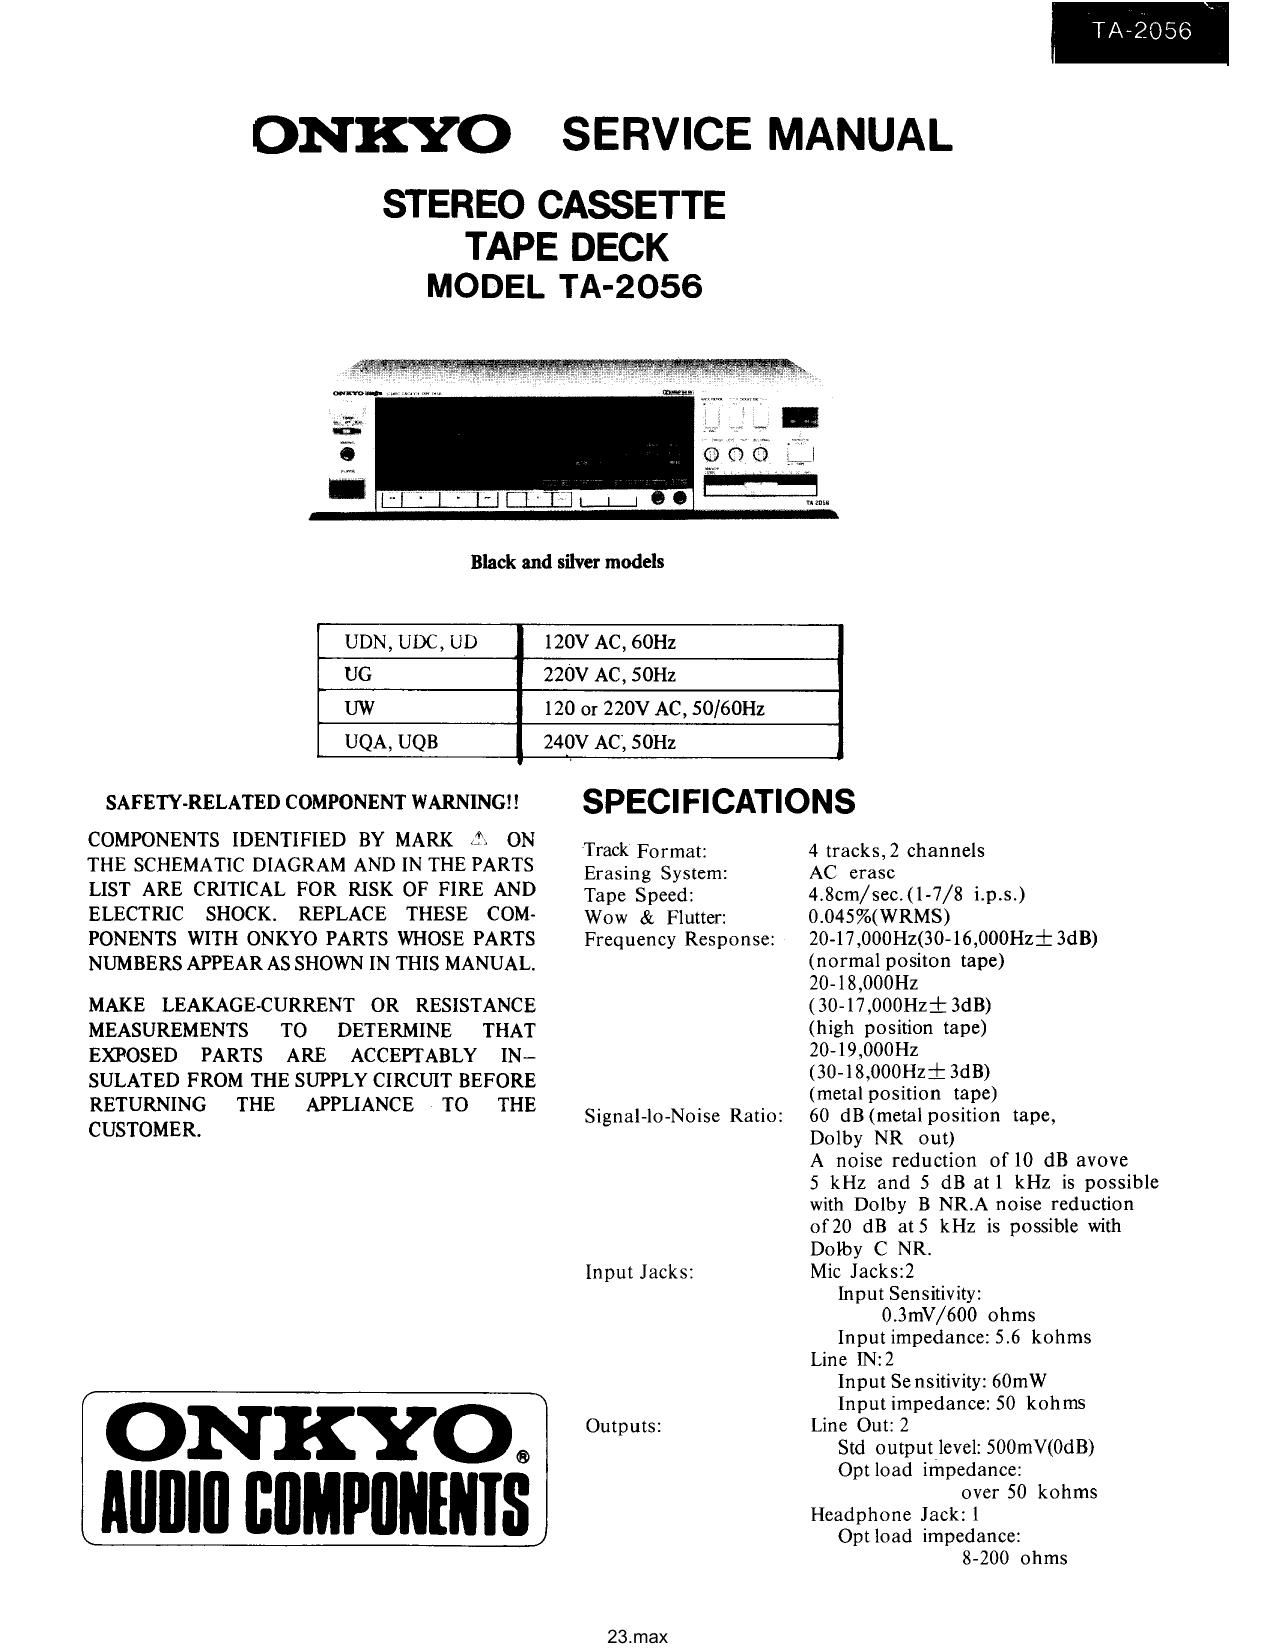 Onkyo TA 2056 Service Manual